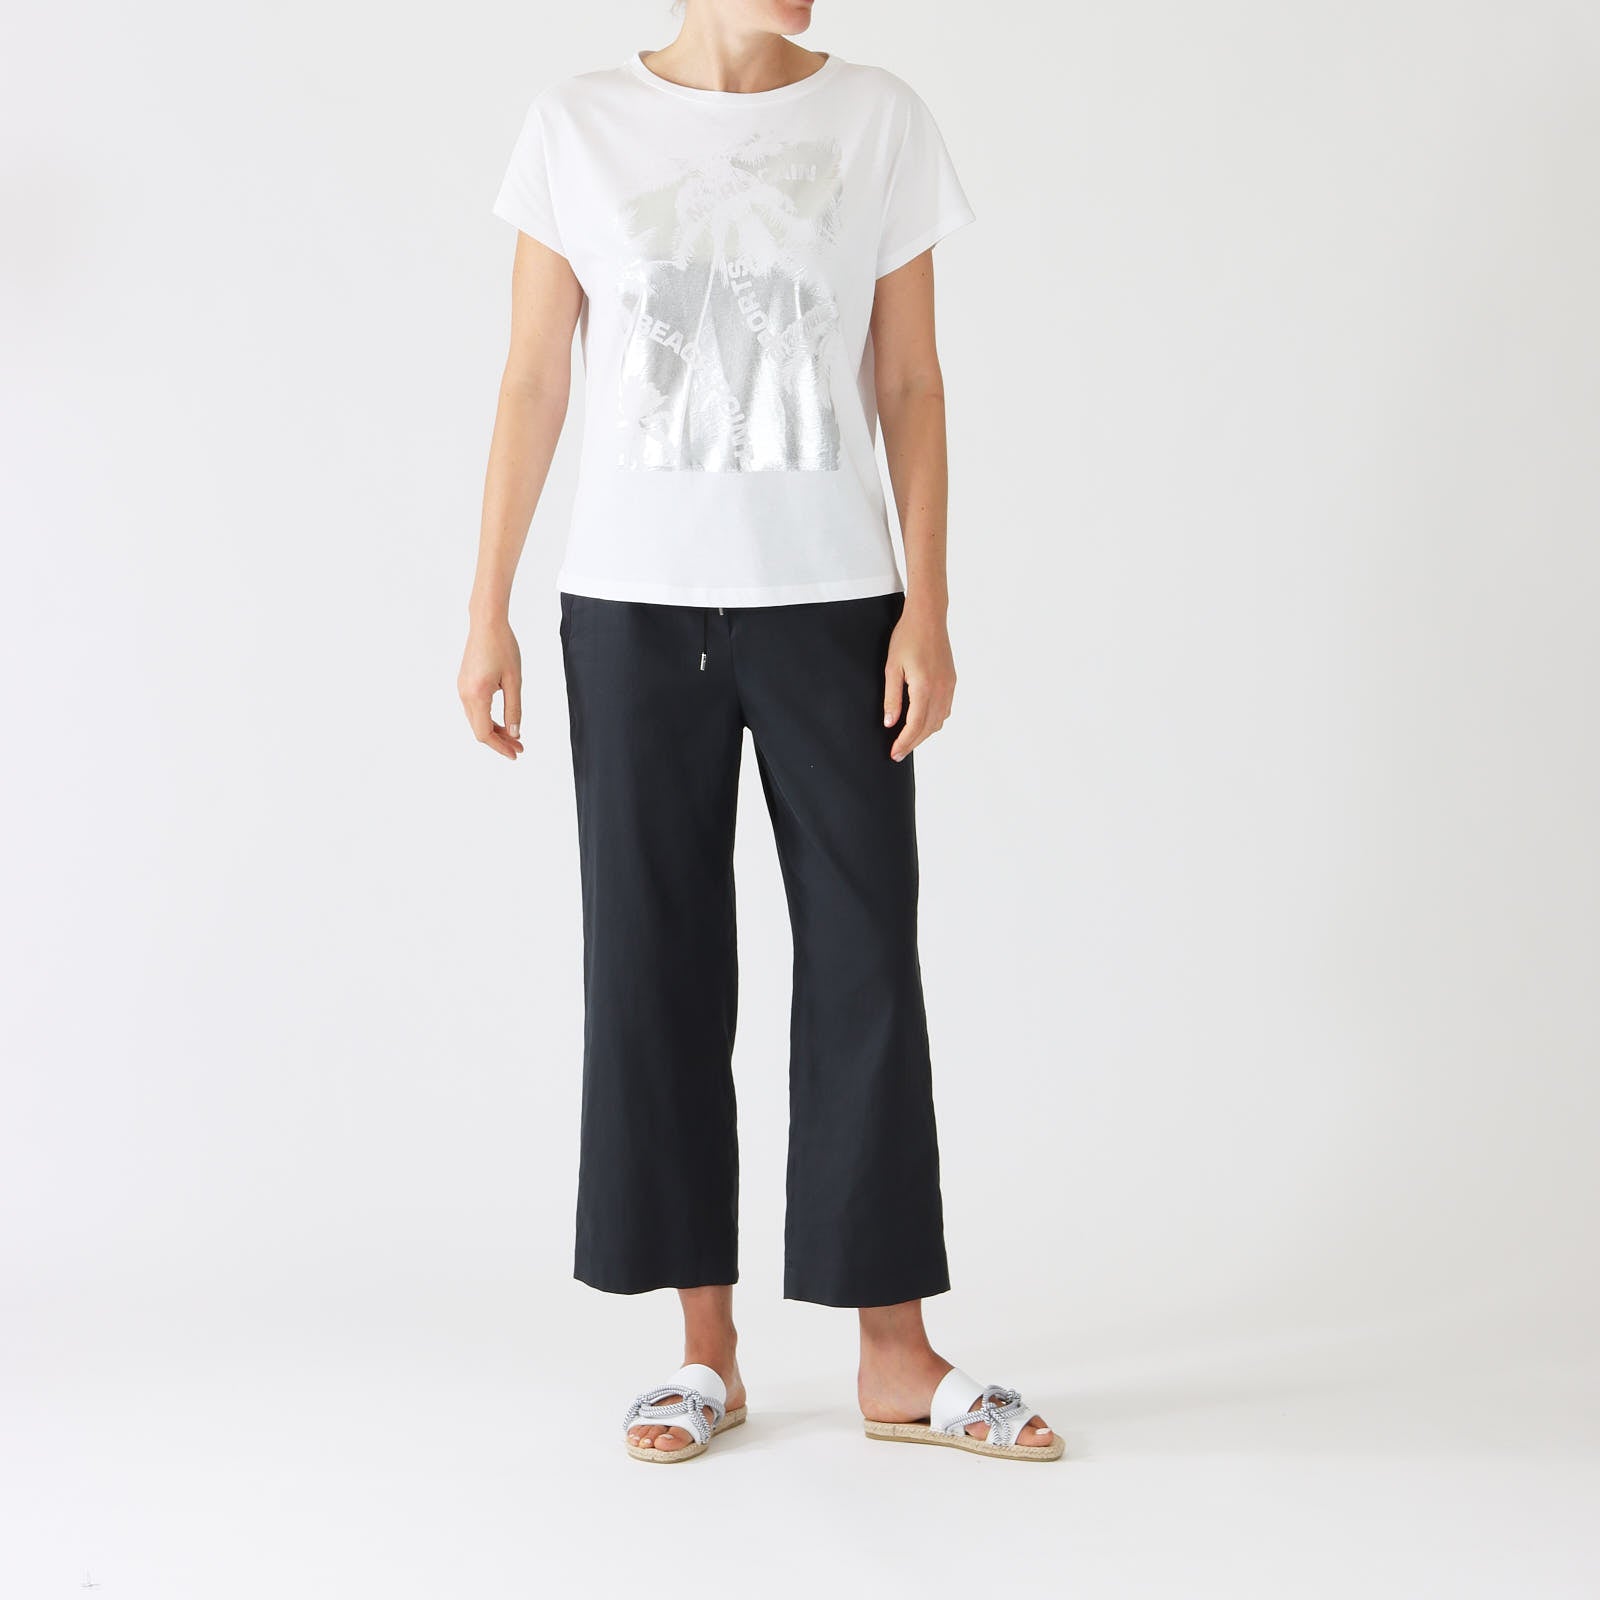 White Silver Palm Print T-Shirt